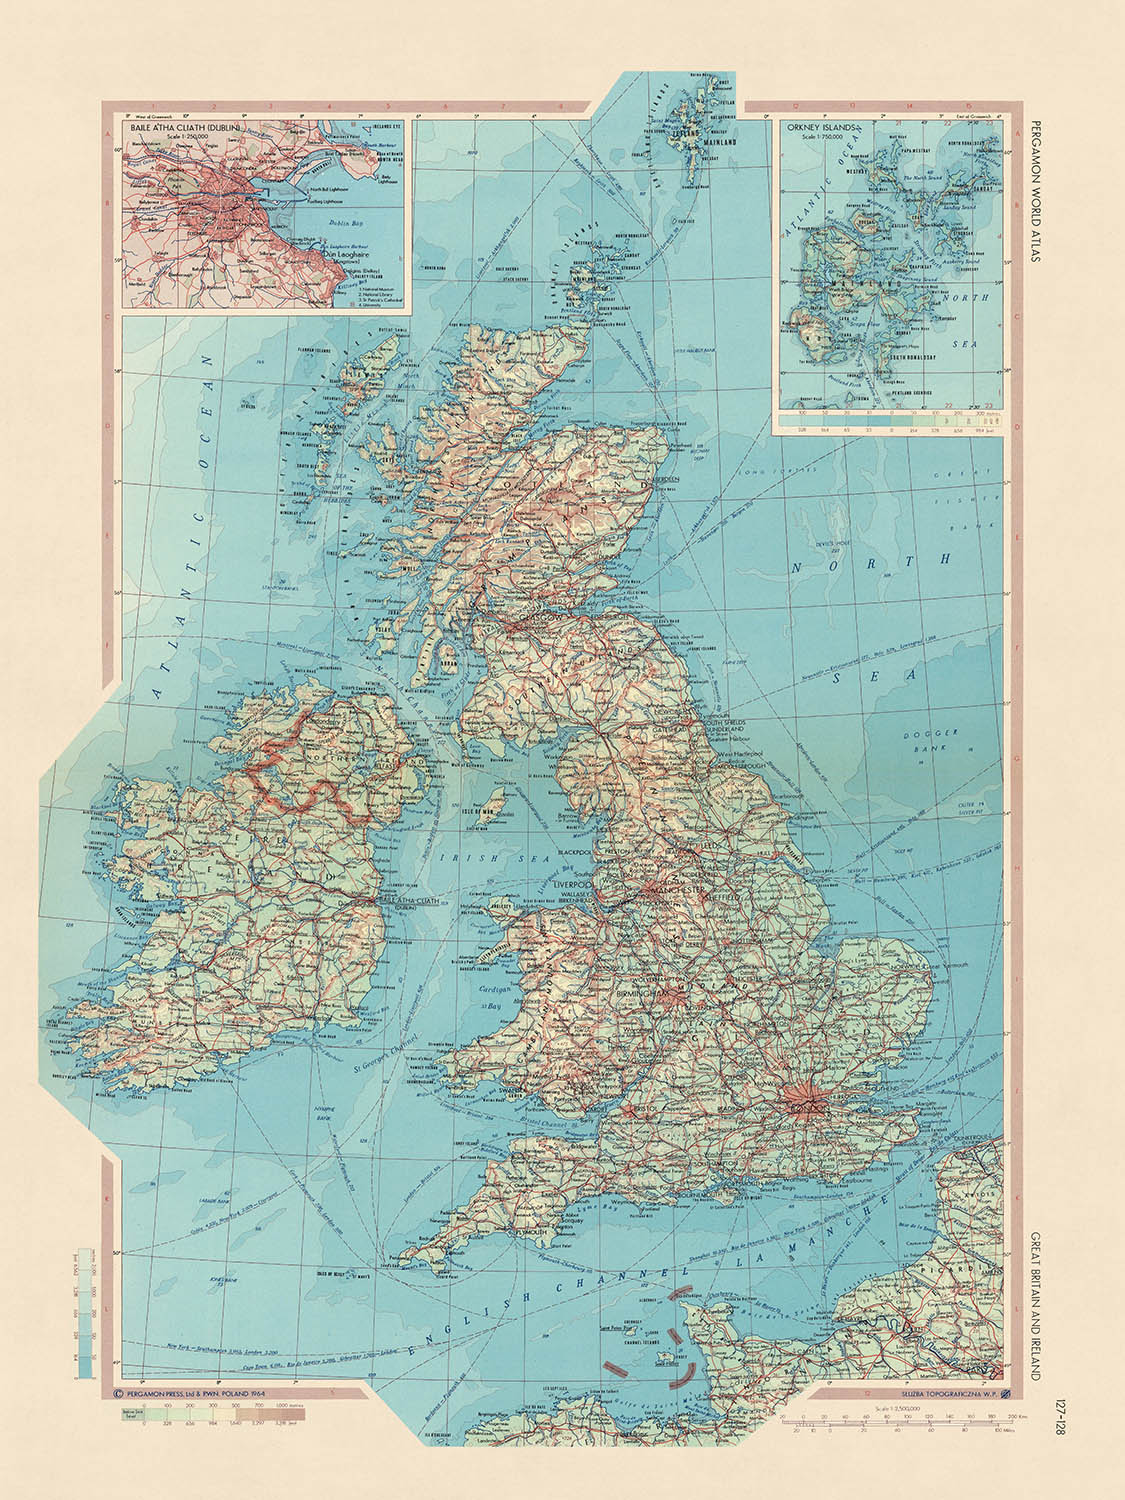 Ancienne carte de la Grande-Bretagne et de l'Irlande, 1967 : Londres, Glasgow, Édimbourg, parc national de Snowdonia, Tamise